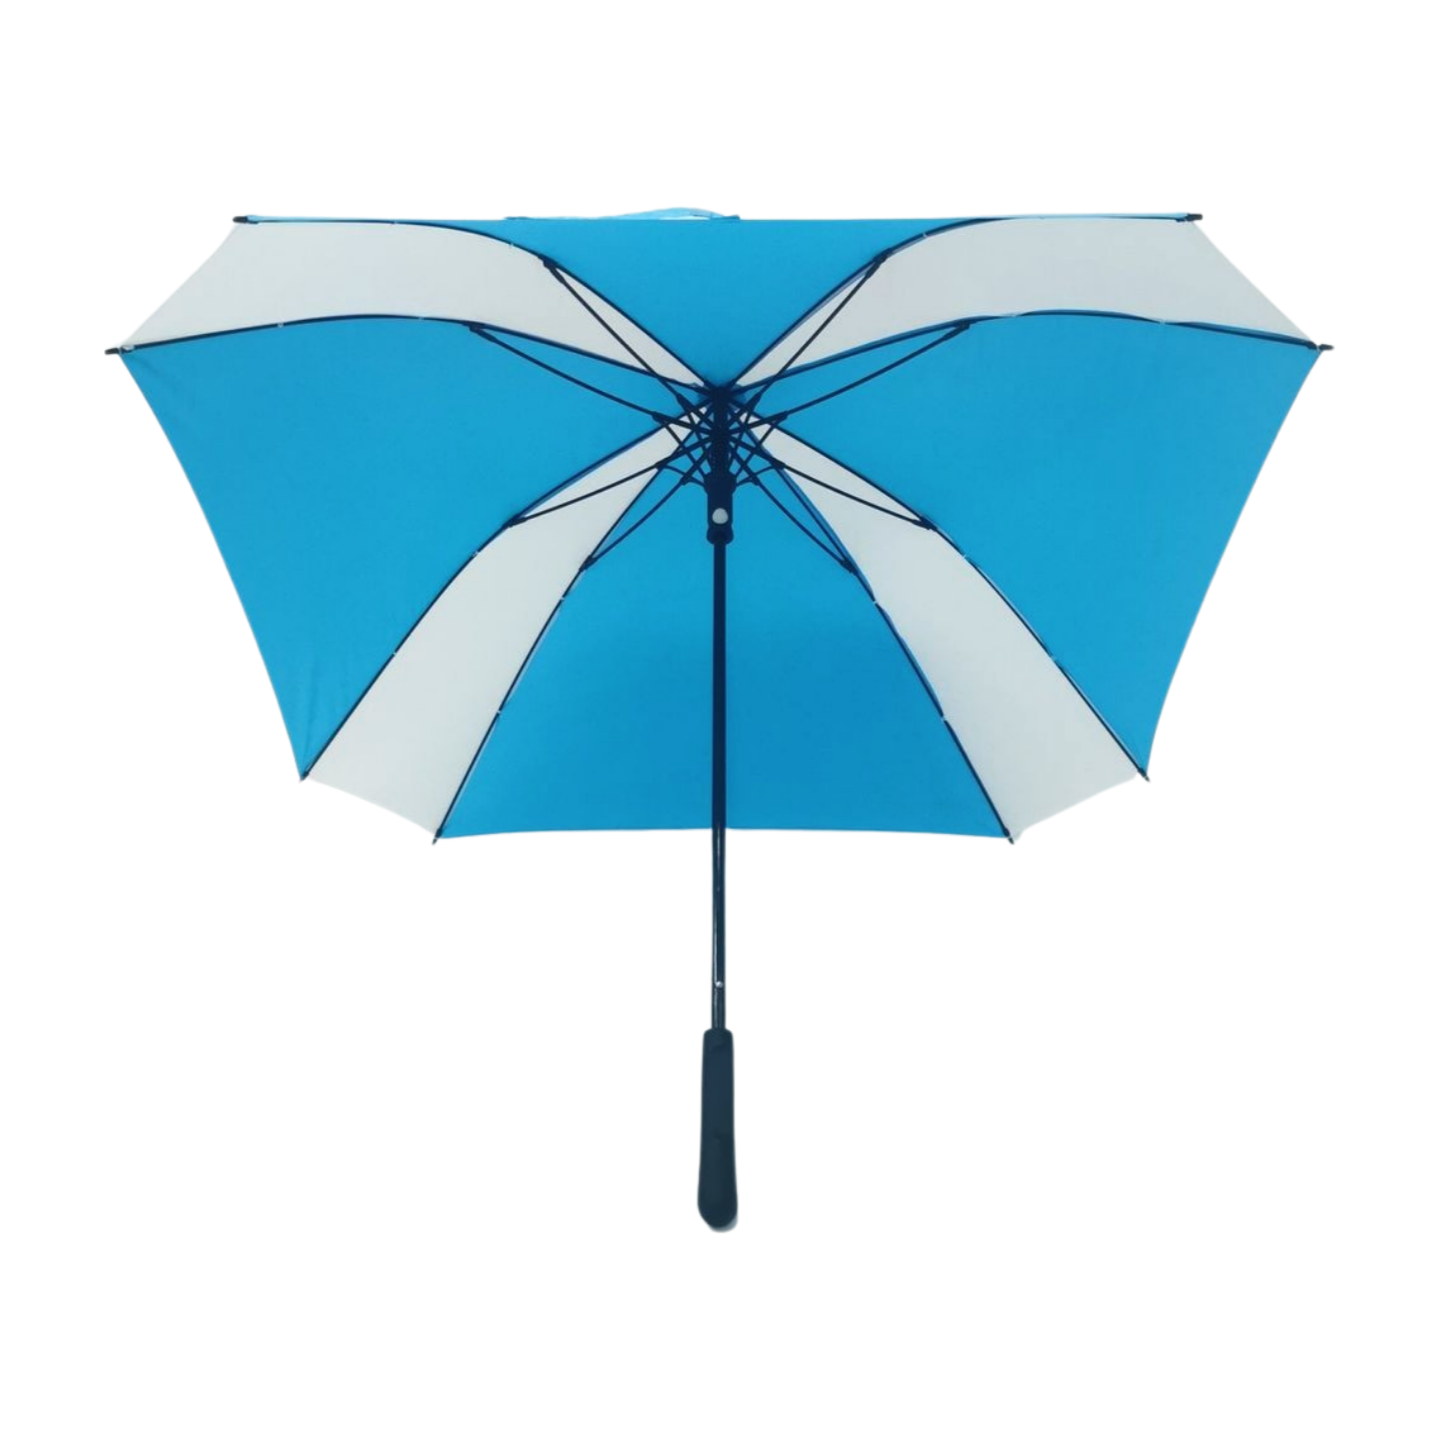 https://www.hodaumbrella.com/pinchless-squa…-golf-umbrella-product/